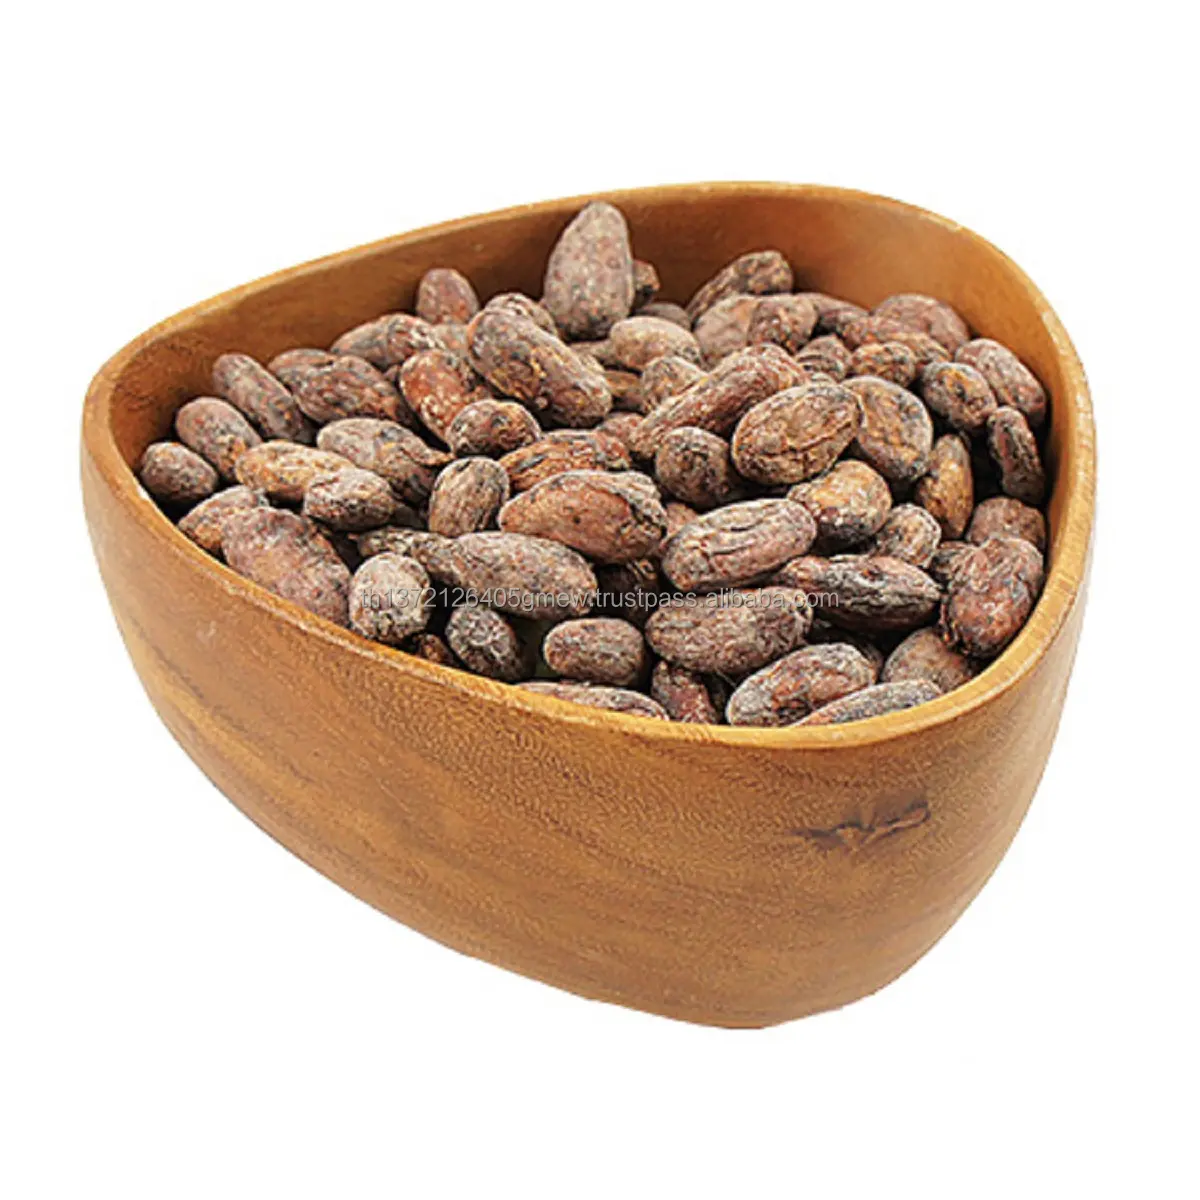 Comprar granos de cacao secos en bolsas de 50kg, granos de cacao tostados orgánicos, granos de cacao crudos secados al sol para la venta